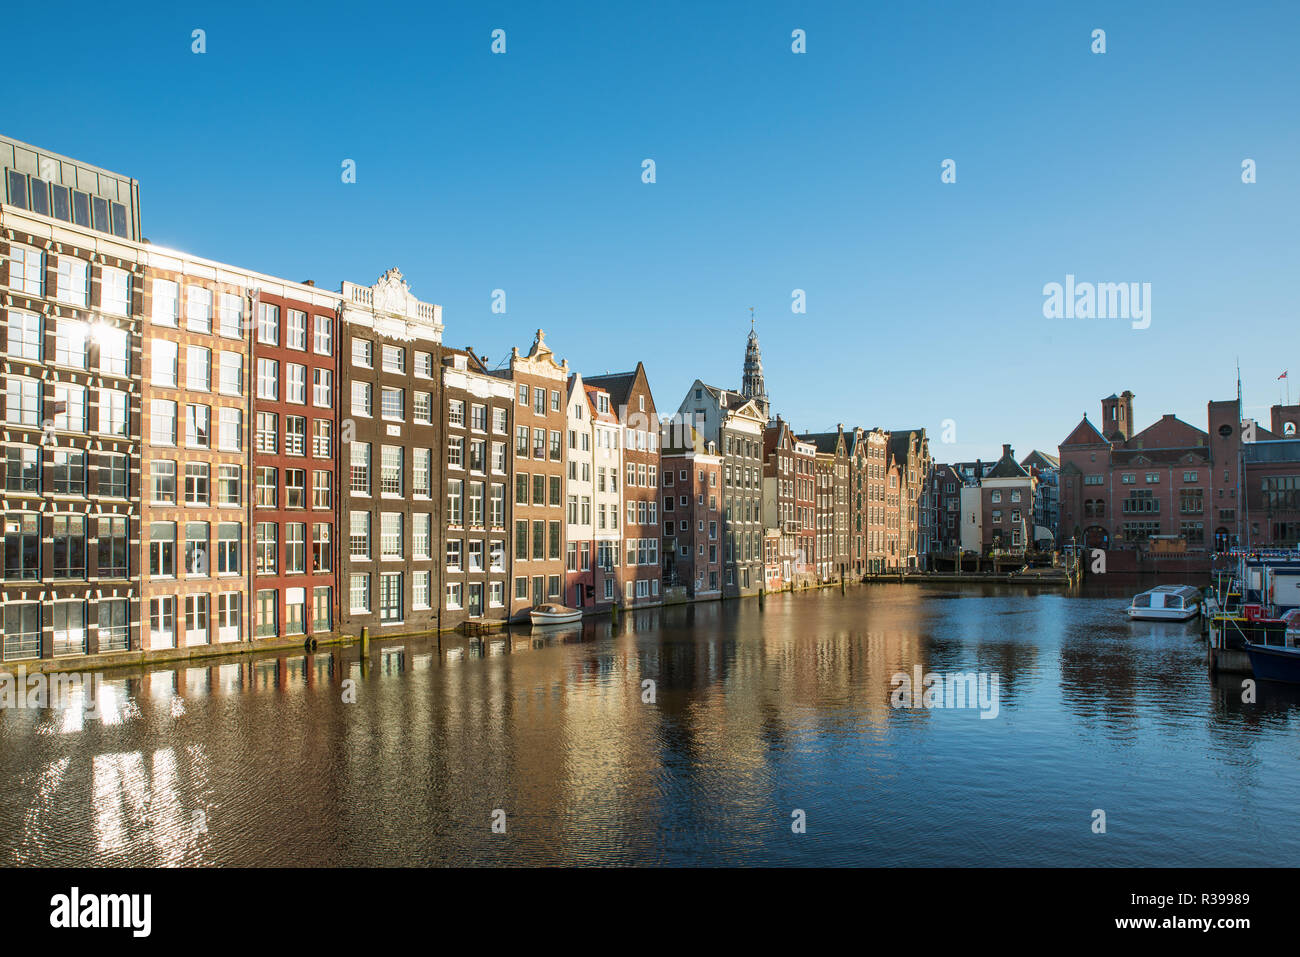 Blick auf die Stadt Amsterdam Niederlande traditionelle Häuser mit Fluss Amstel in Amsterdam, Niederlande Stockfoto